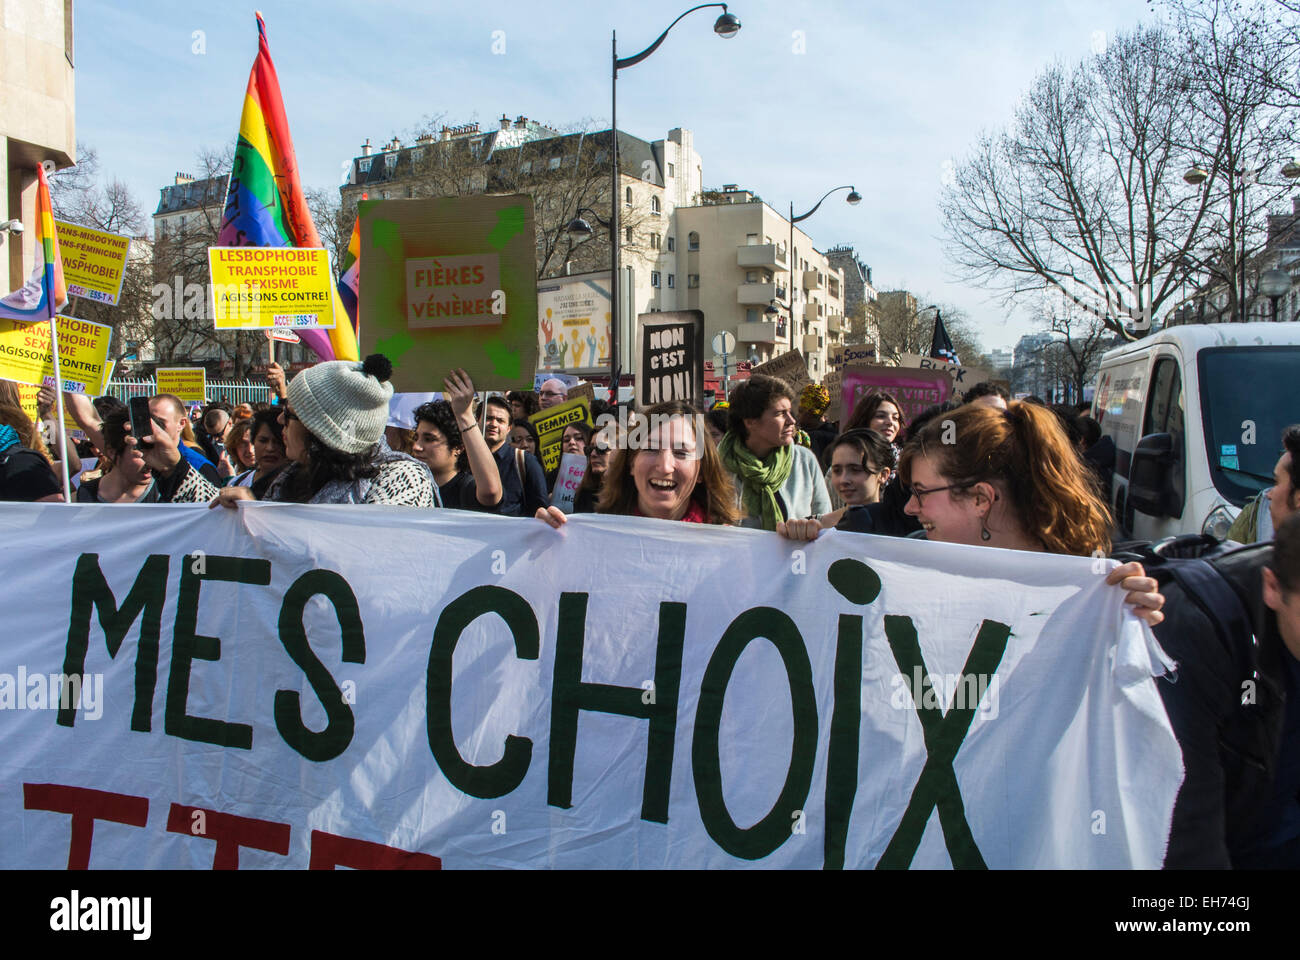 Paris, France. Foule nombreuse, Front, 8 mars, des groupes féministes français défilant lors de la manifestation de la Journée internationale de la femme, Belleville, défilant avec des banderoles de protestation et des panneaux sur la marche des droits des femmes de la rue "mon choix" Banque D'Images